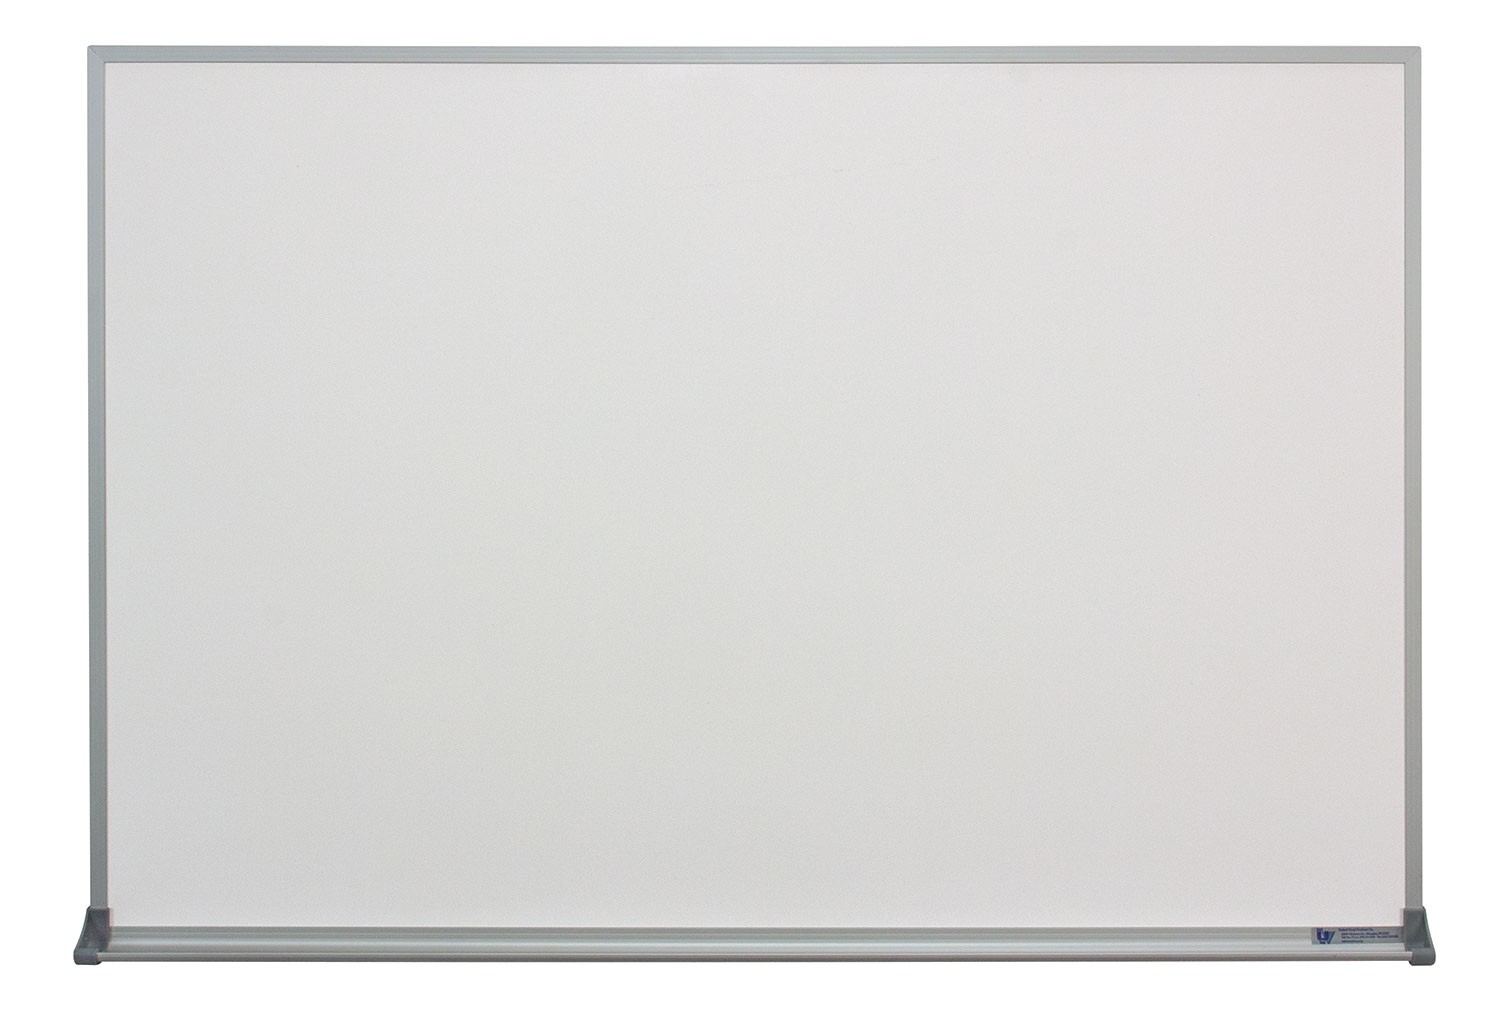 36 x 24" Aluminum Framed Dry/Wet Erase Board